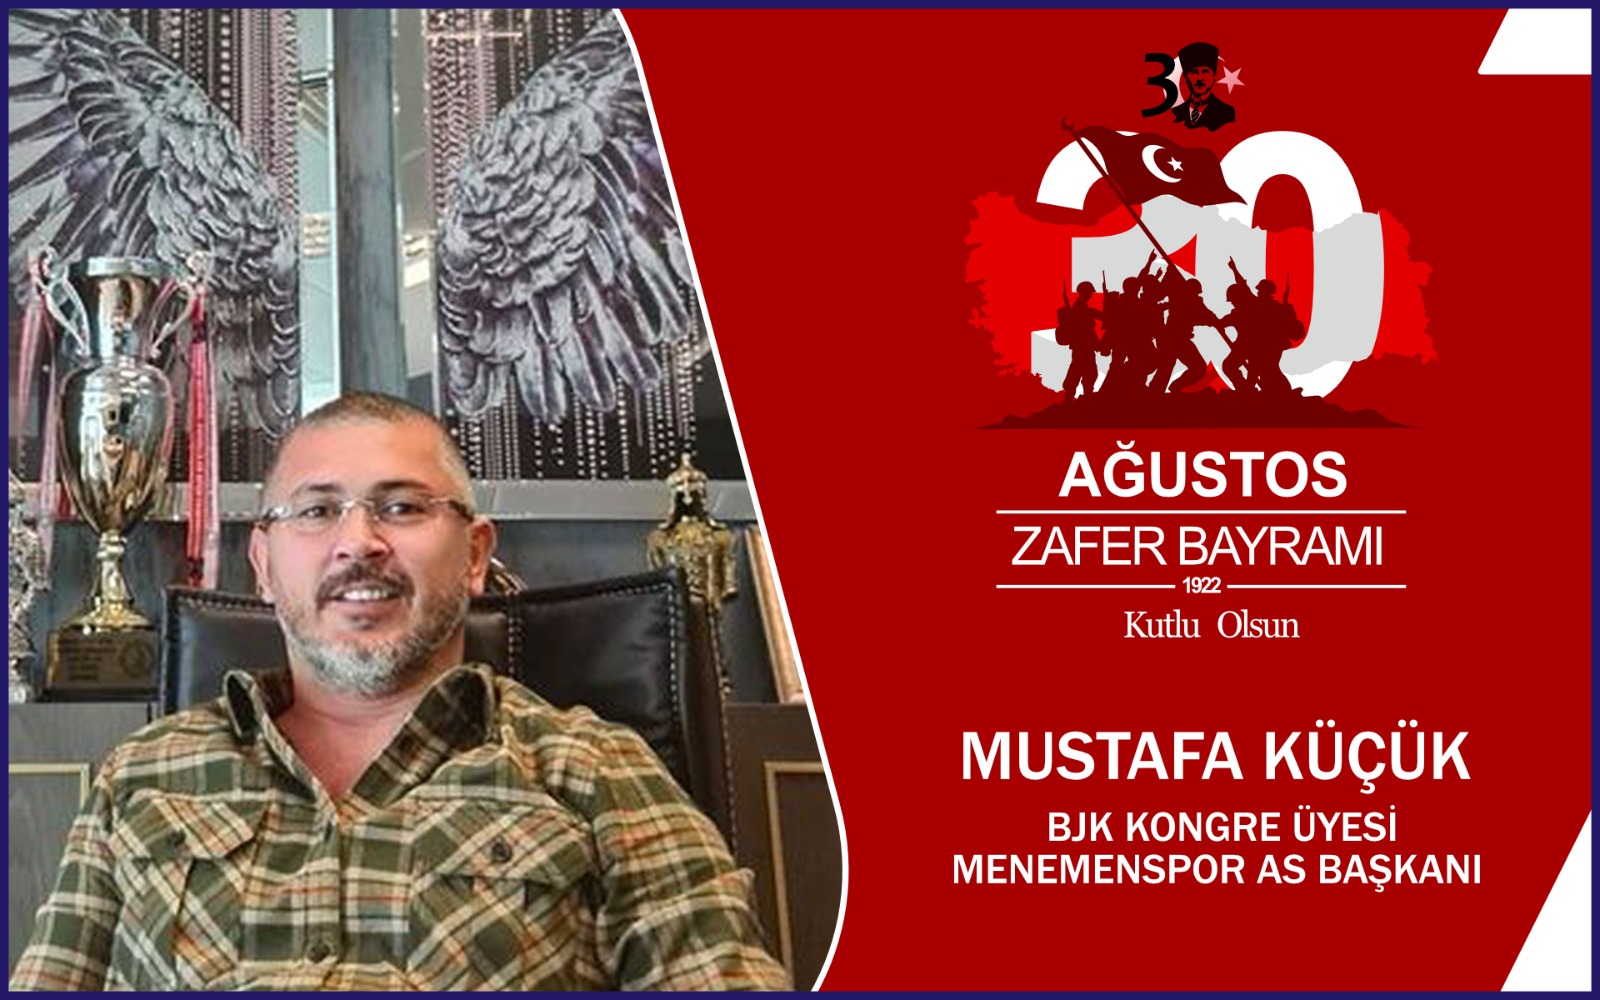 Mustafa Küçük’ten Kutlama Mesajı